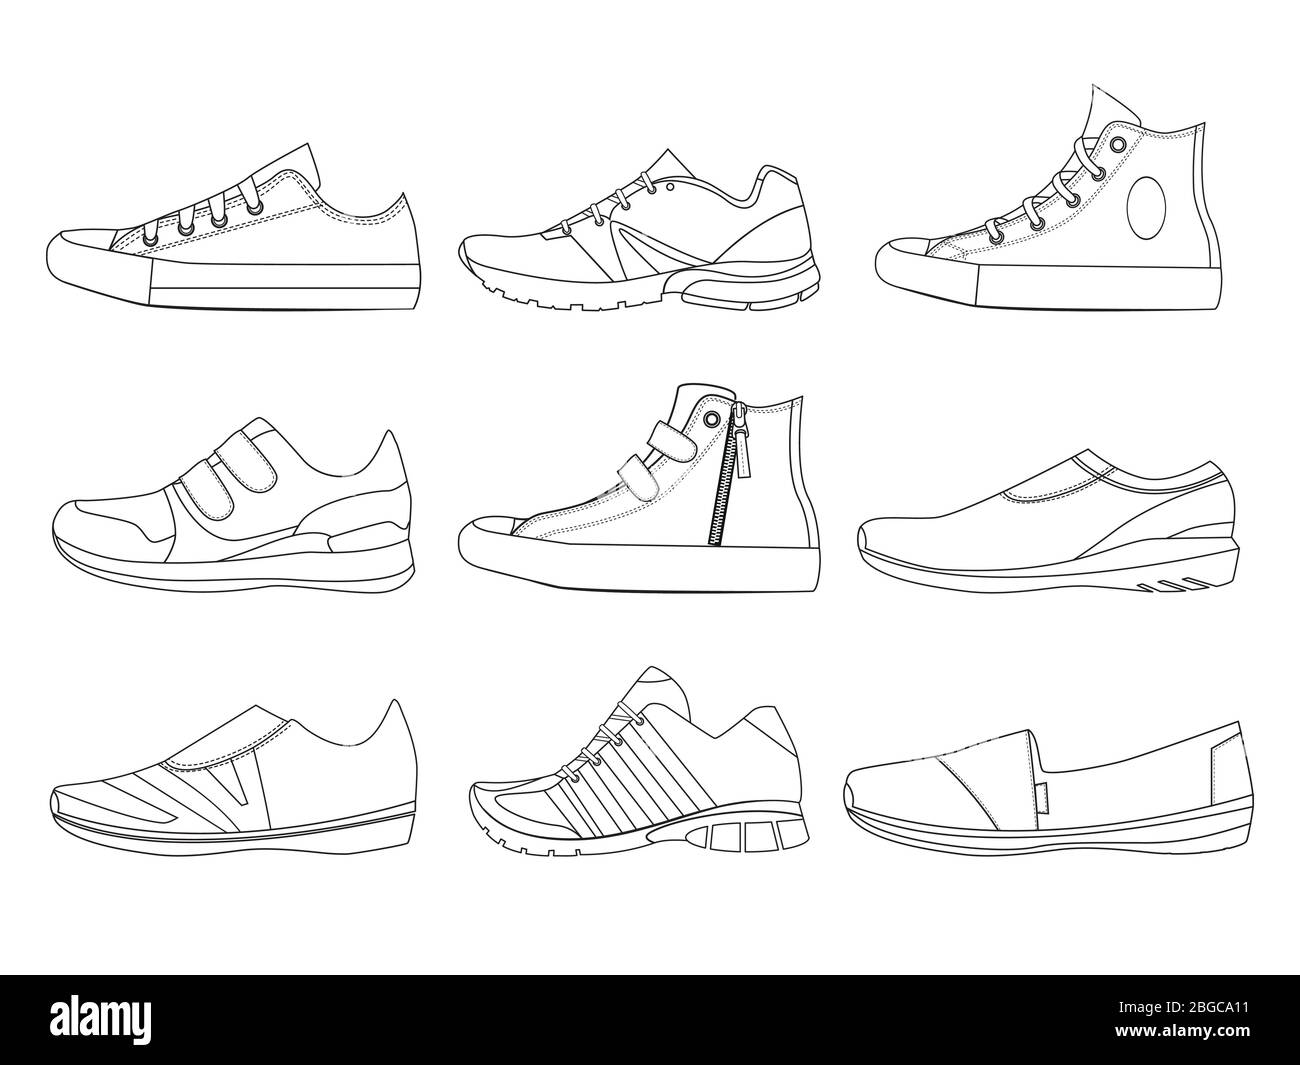 Illustrazioni di scarpe teenage in stile lineare. Immagini vettoriali di stivali e sneakers Illustrazione Vettoriale